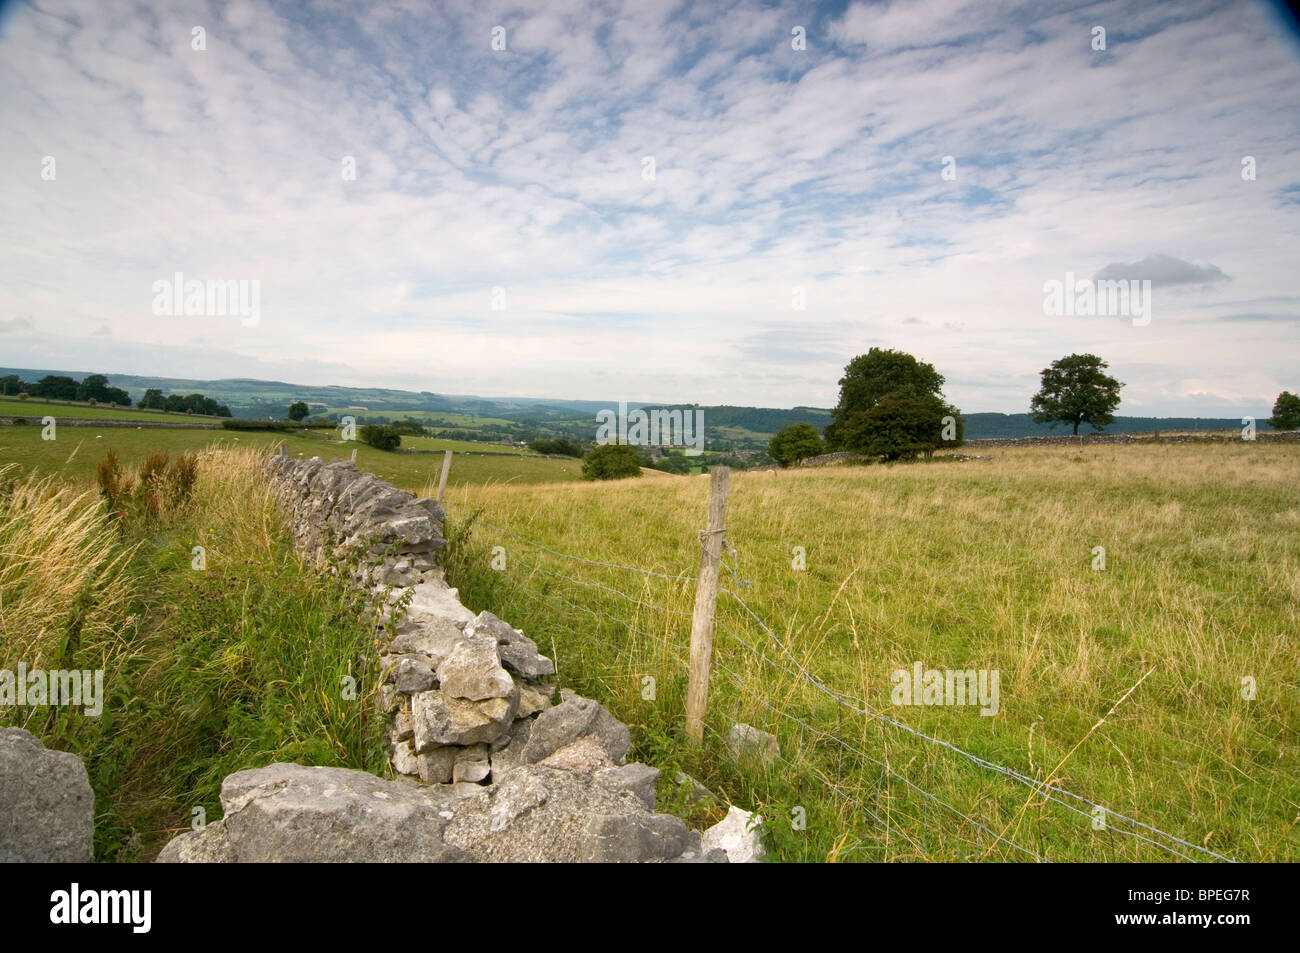 Mur en pierre sèche et de barbelés et un champ dans le Derbyshire Peak District. Les arbres dans le paysage et de nuages dans le ciel bleu Banque D'Images